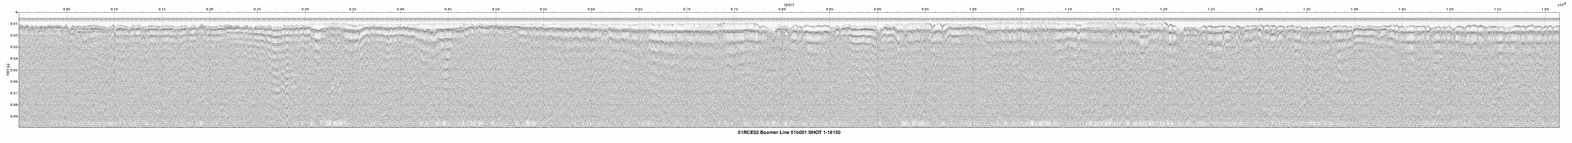 01RCE02-01b001 seismic profile thumbnail